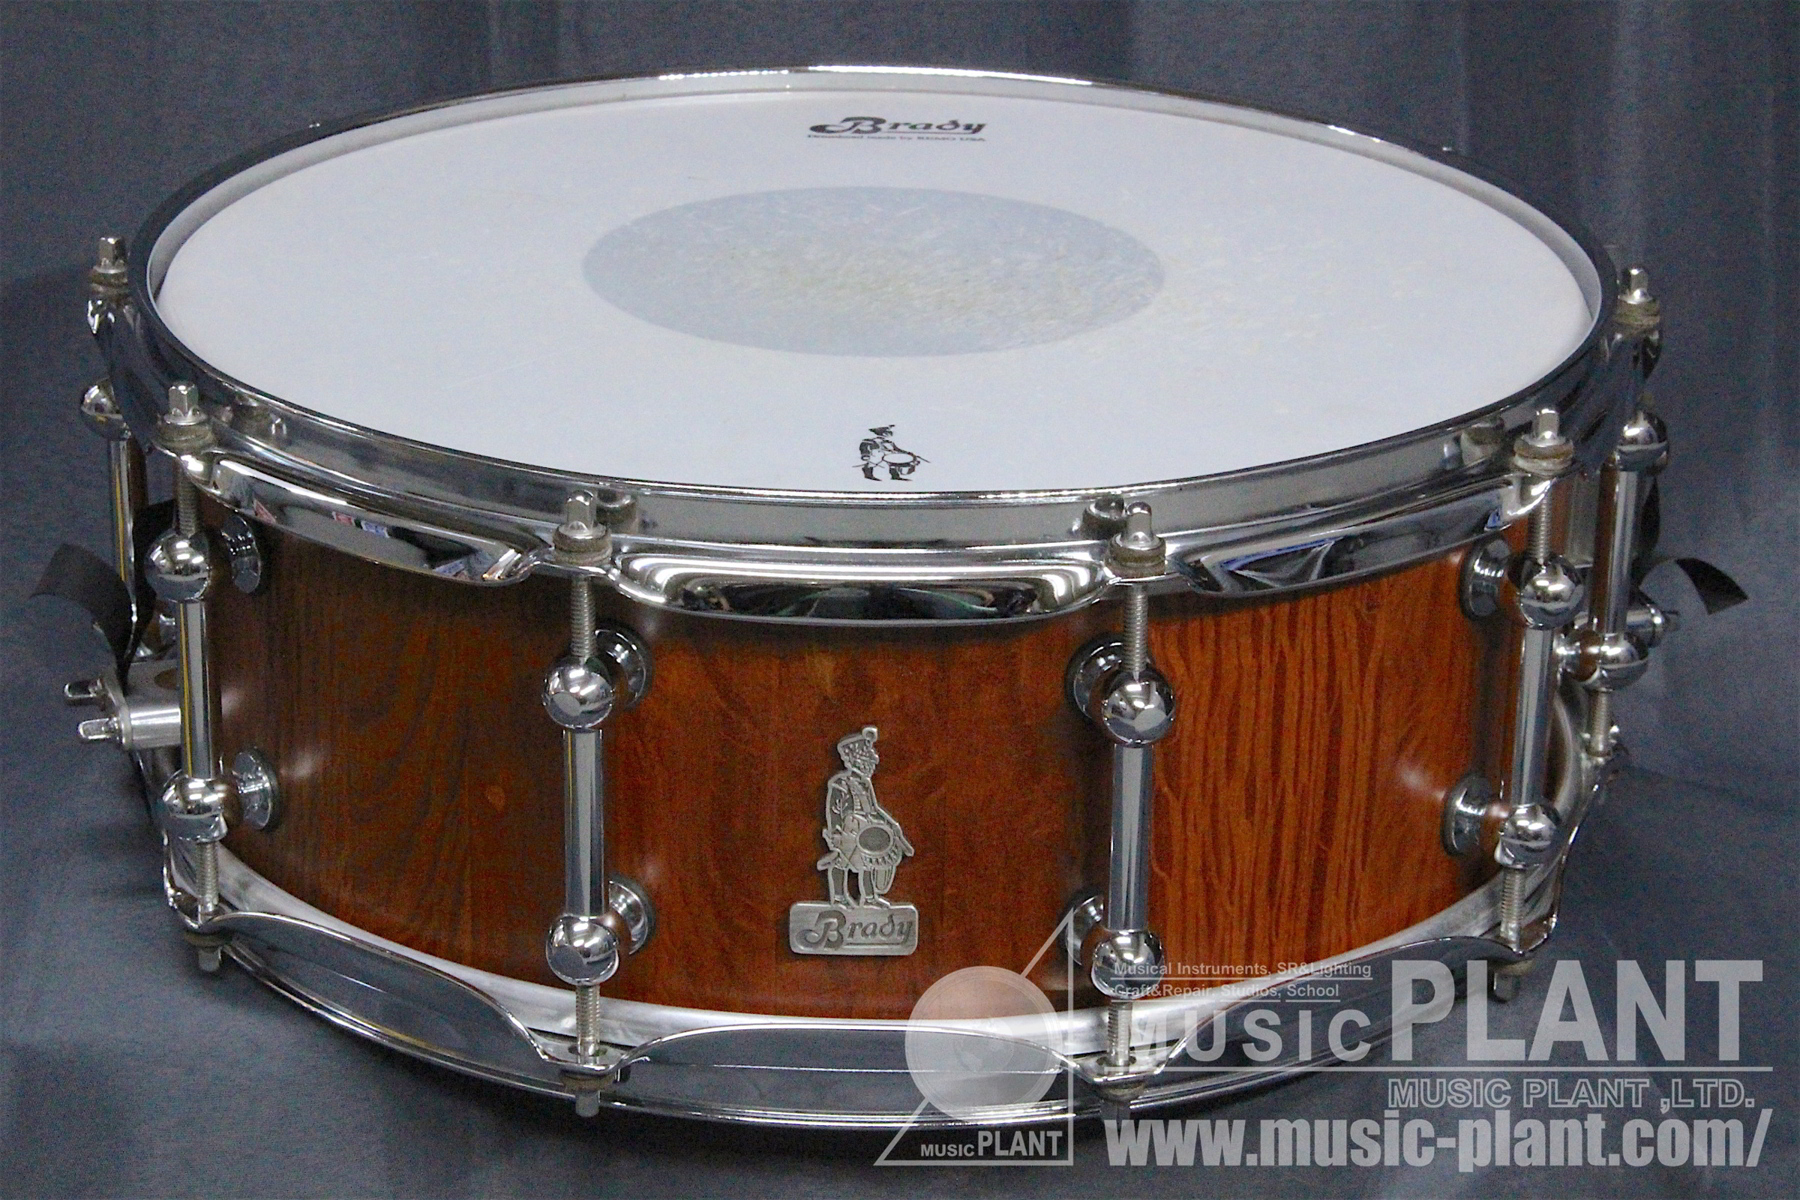 Brady Drums スネアドラムSheoak Block Shell Snare 14×5.5 inch中古()売却済みです。あしからずご了承ください。  MUSIC PLANT WEBSHOP